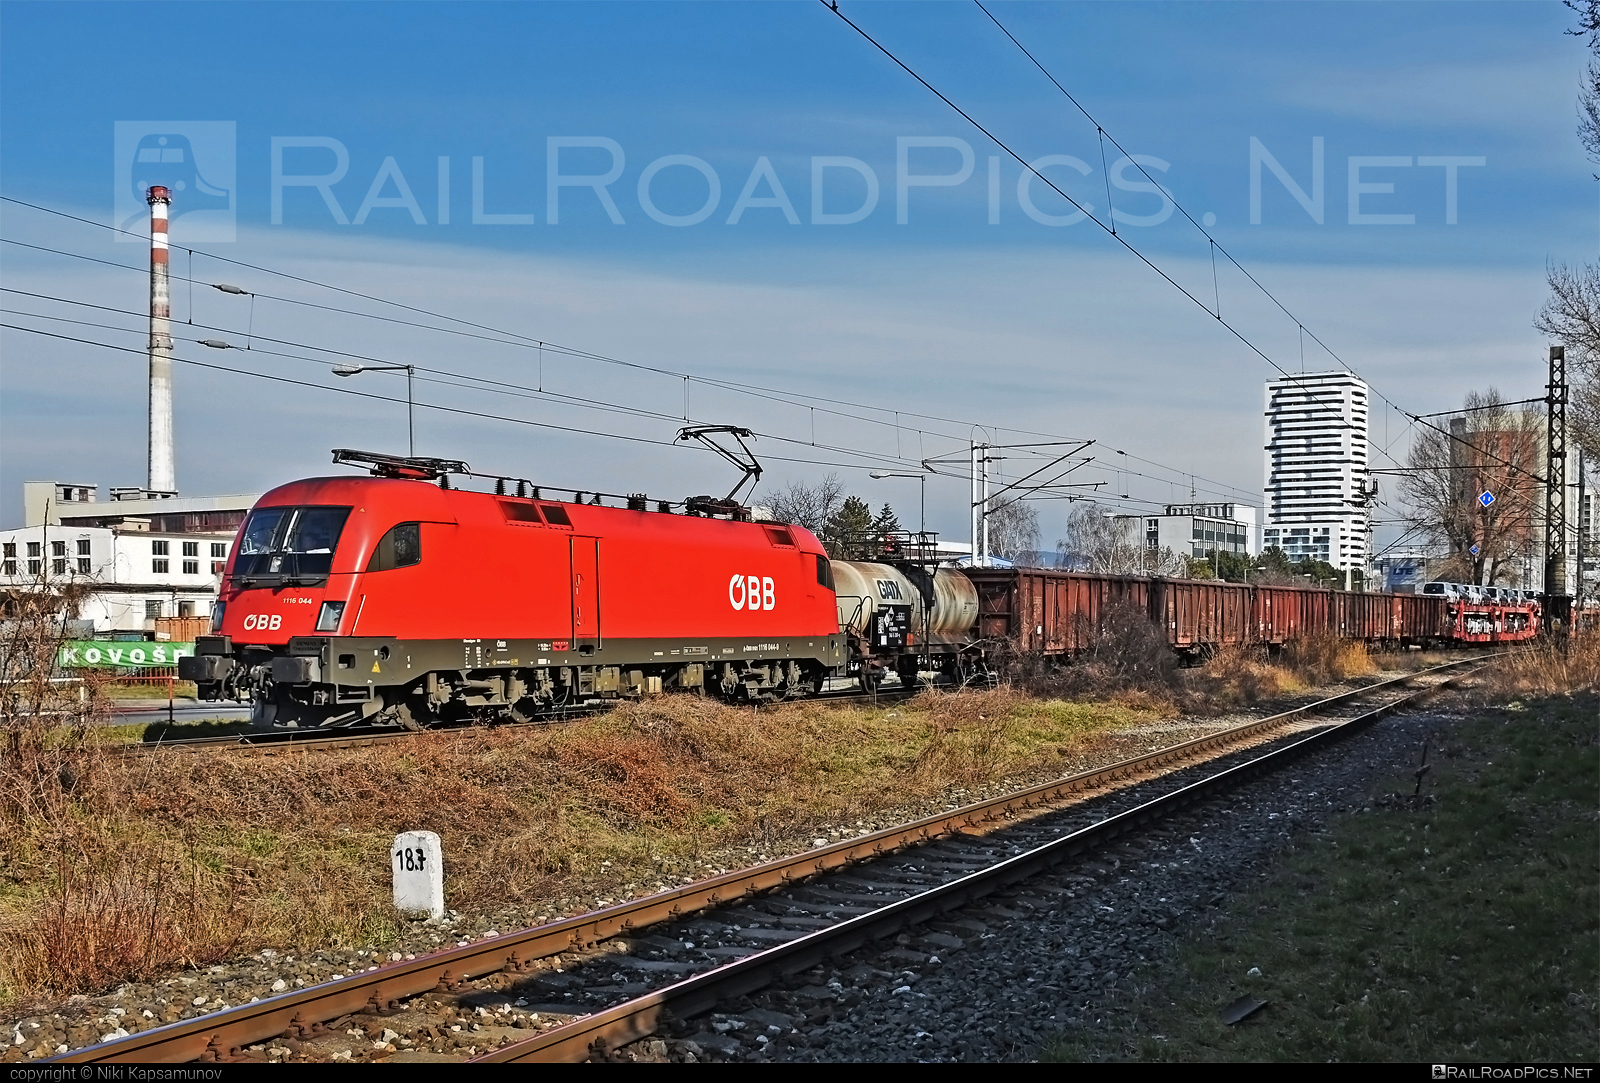 Siemens ES 64 U2 - 1116 044 operated by Rail Cargo Austria AG #es64 #es64u2 #eurosprinter #mixofcargo #obb #openwagon #osterreichischebundesbahnen #rcw #siemens #siemenses64 #siemenses64u2 #siemenstaurus #taurus #tauruslocomotive